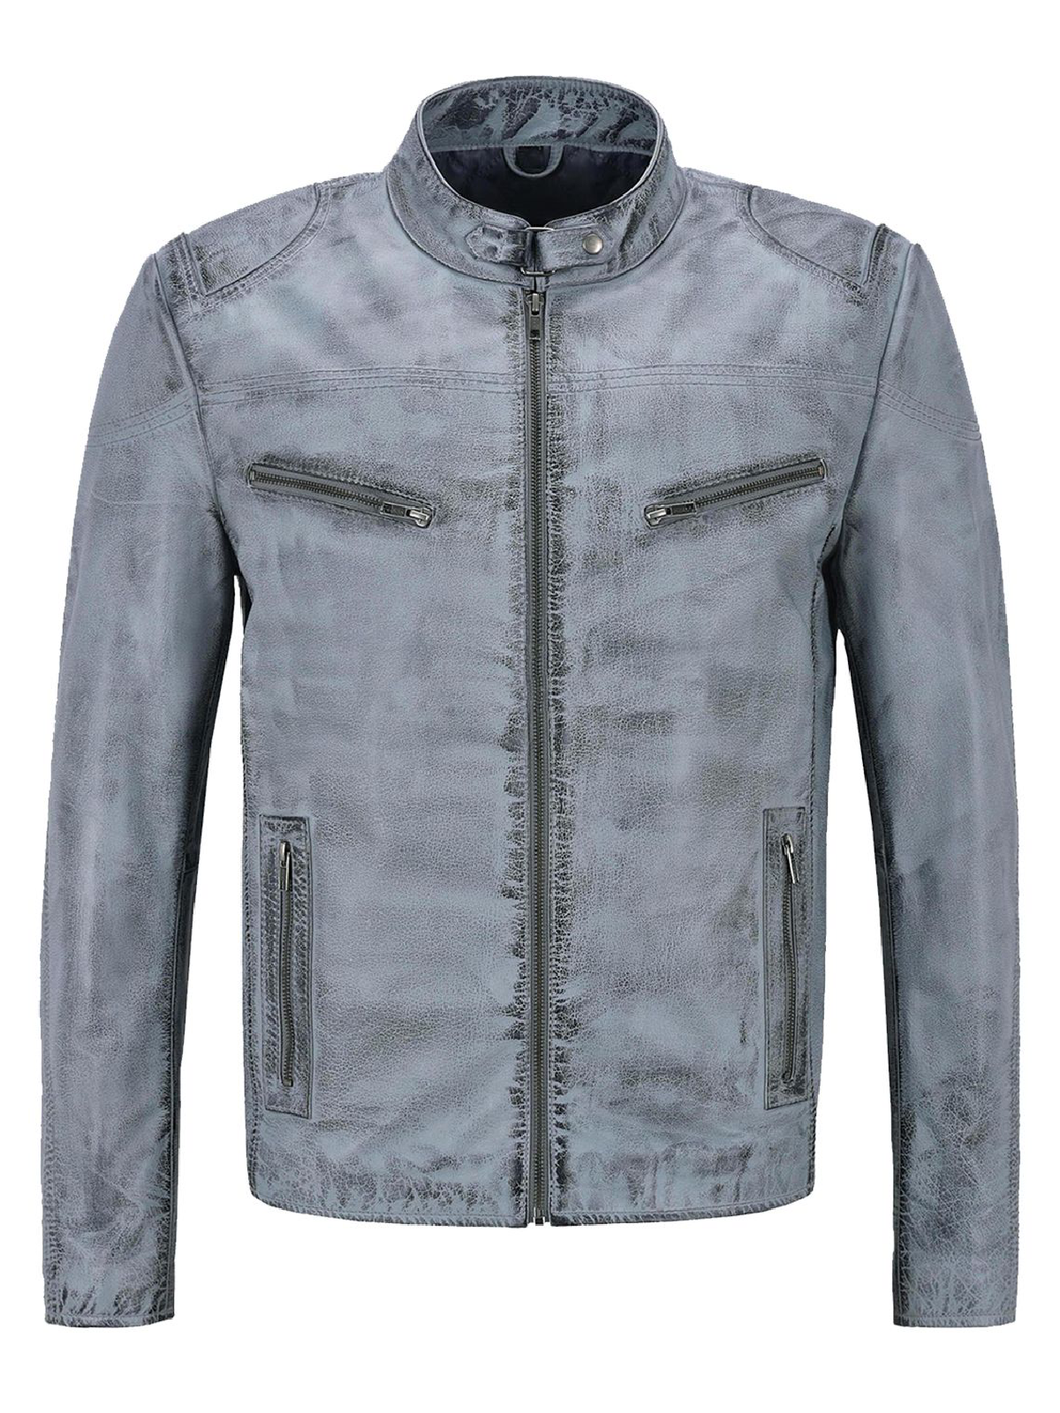 Men's Distressed Light Blue Biker Leather Jacket